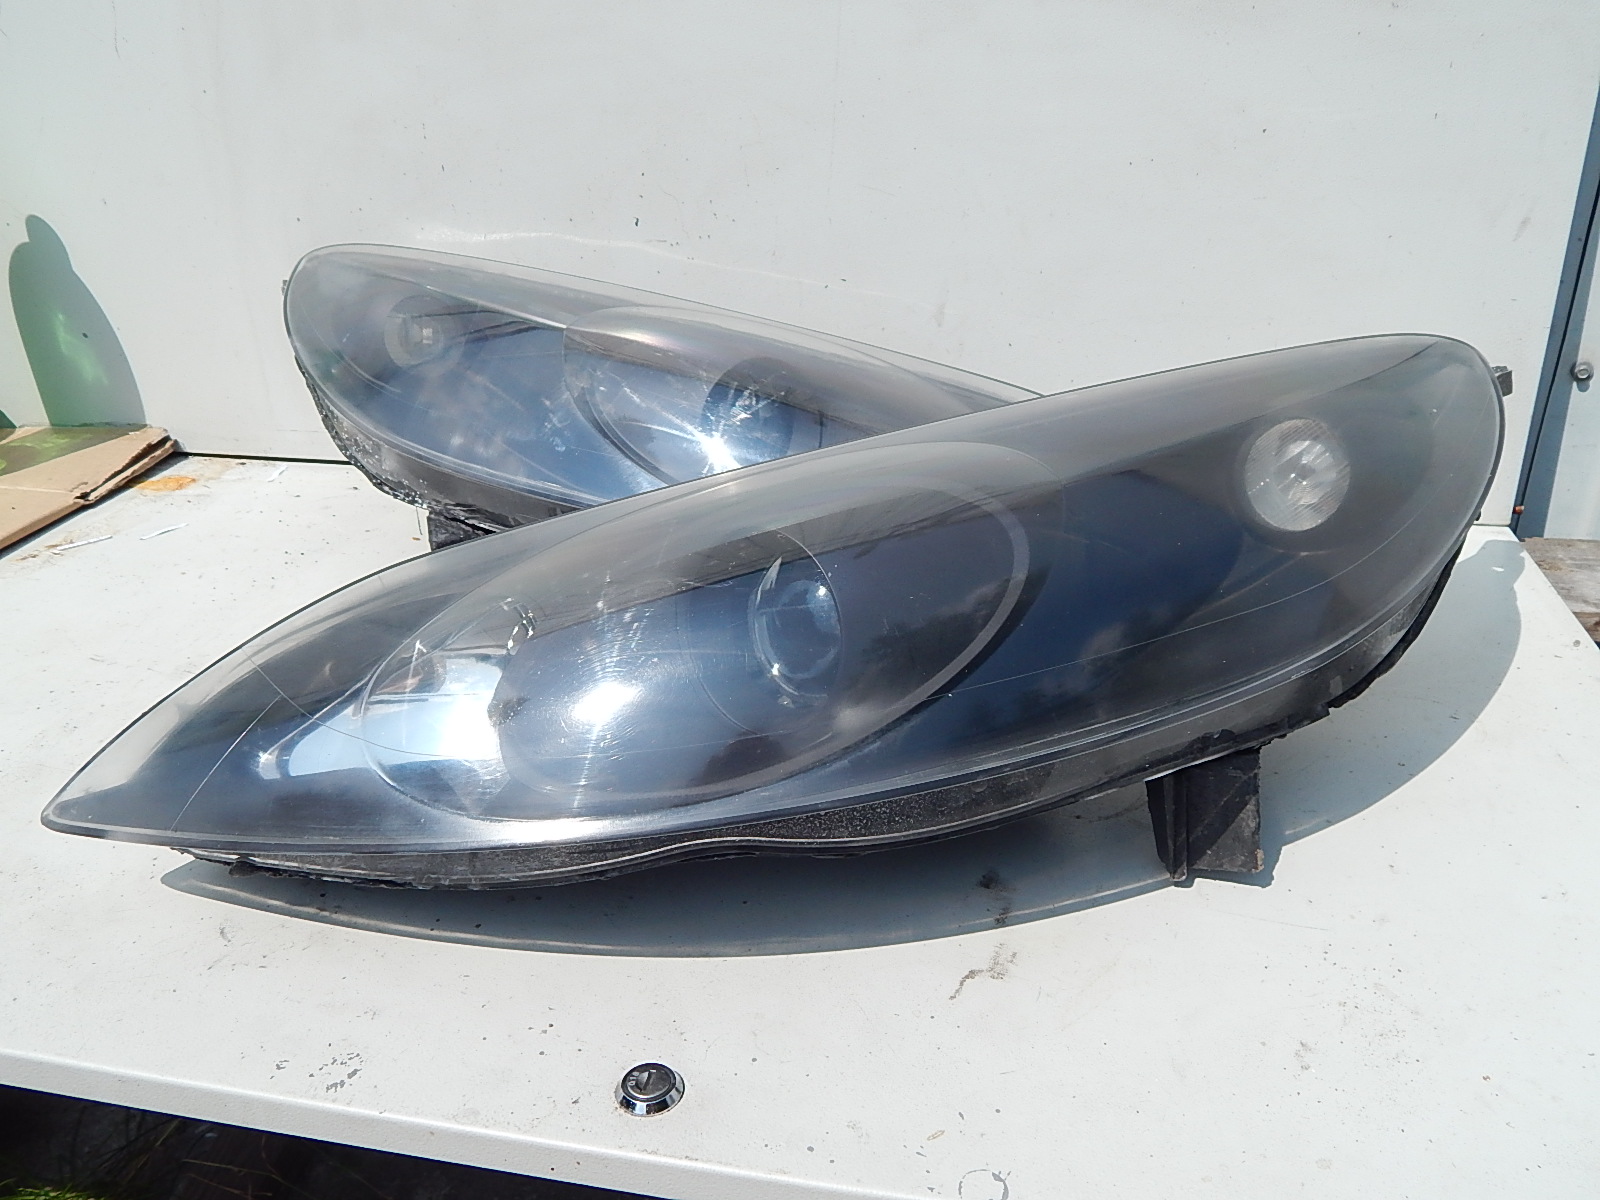 Naprawa świateł samochodowych komplet lamp do samochodu